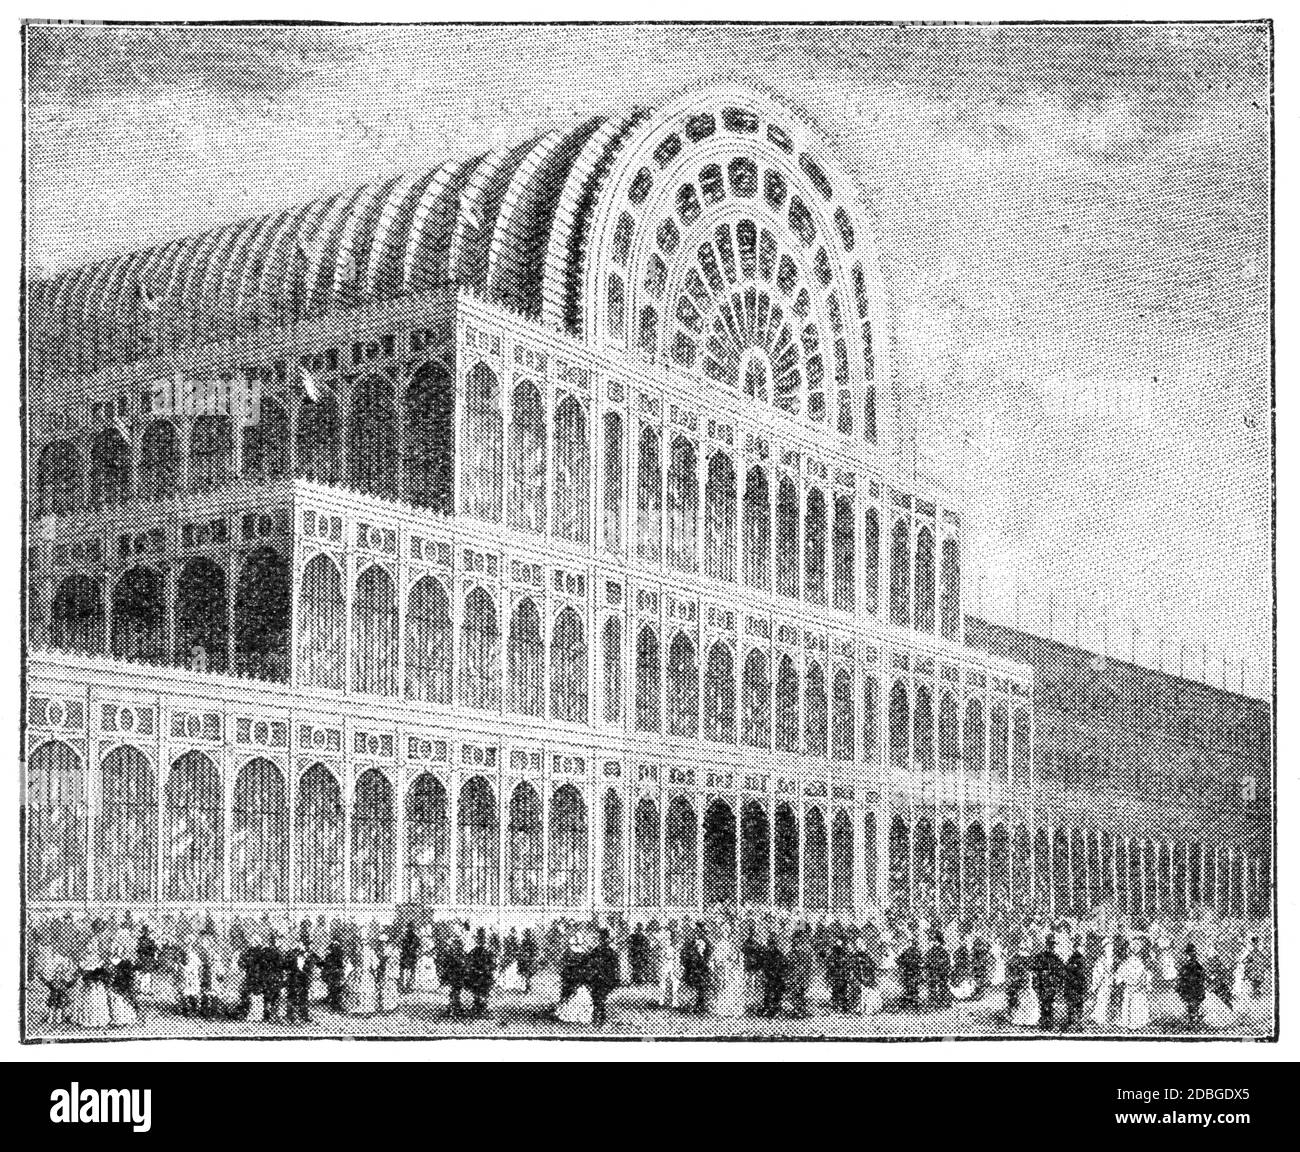 Le Crystal Palace (devant) à Hyde Park pour la grande exposition internationale de 1851, Londres. Illustration du XIXe siècle. Fond blanc. Banque D'Images